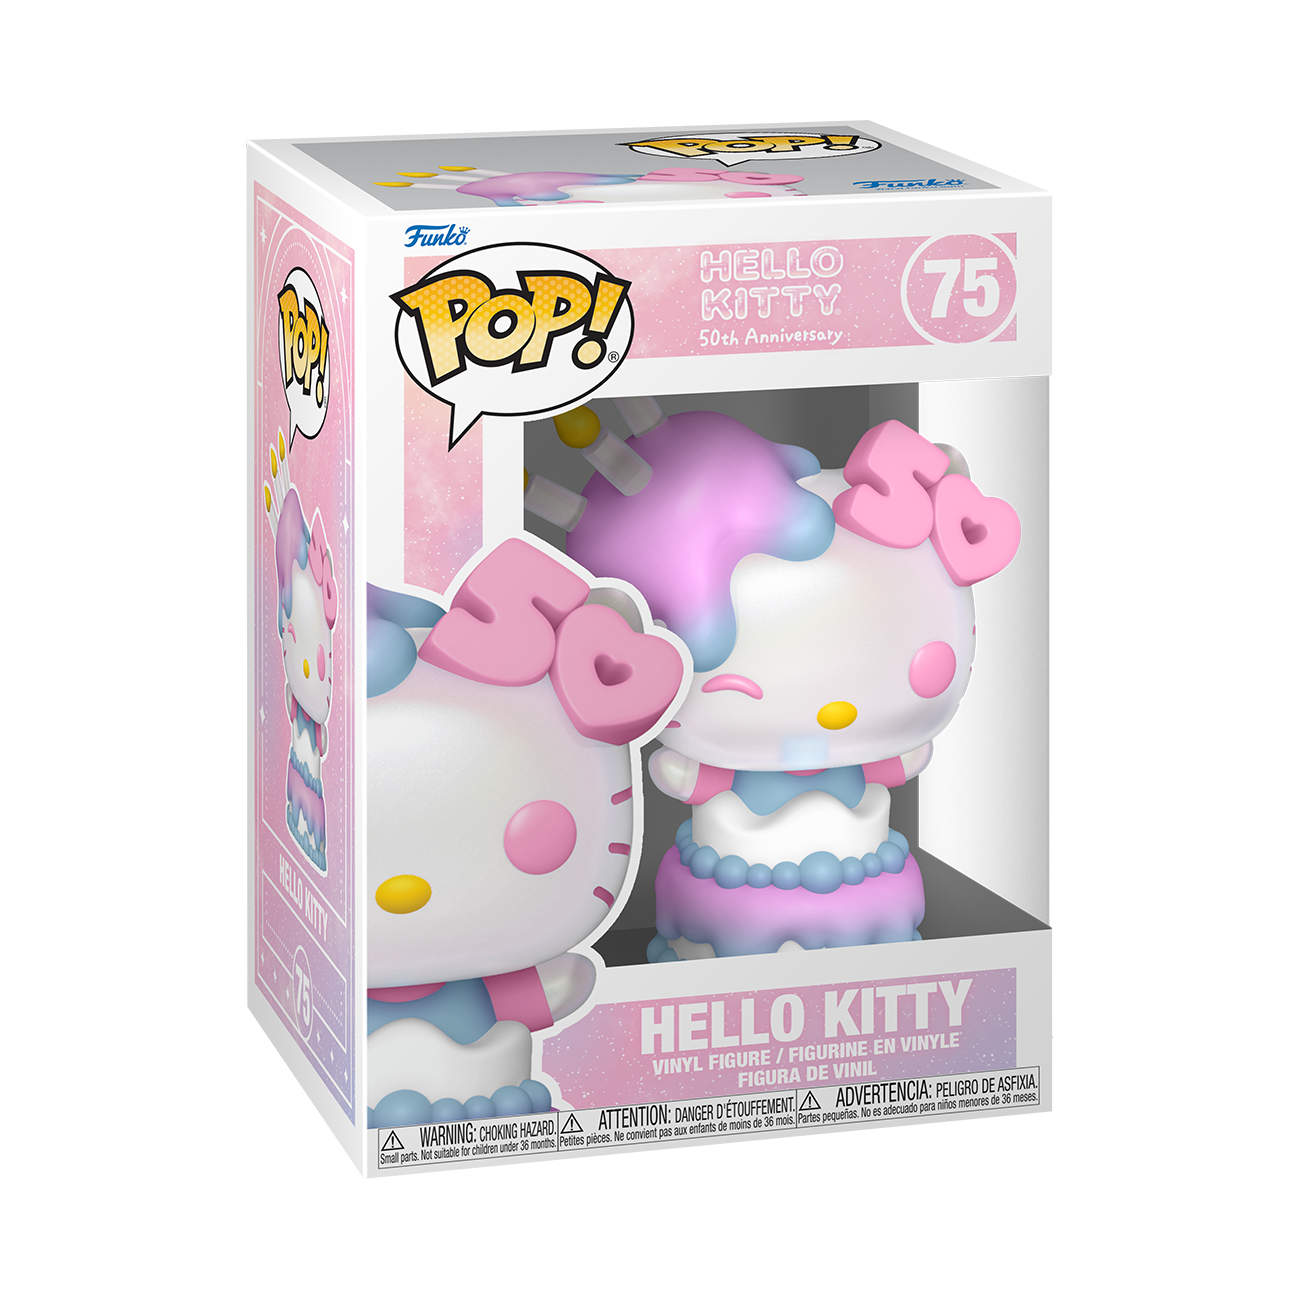 Funko POP! Sanrio: Hello Kitty 50th Anniversary